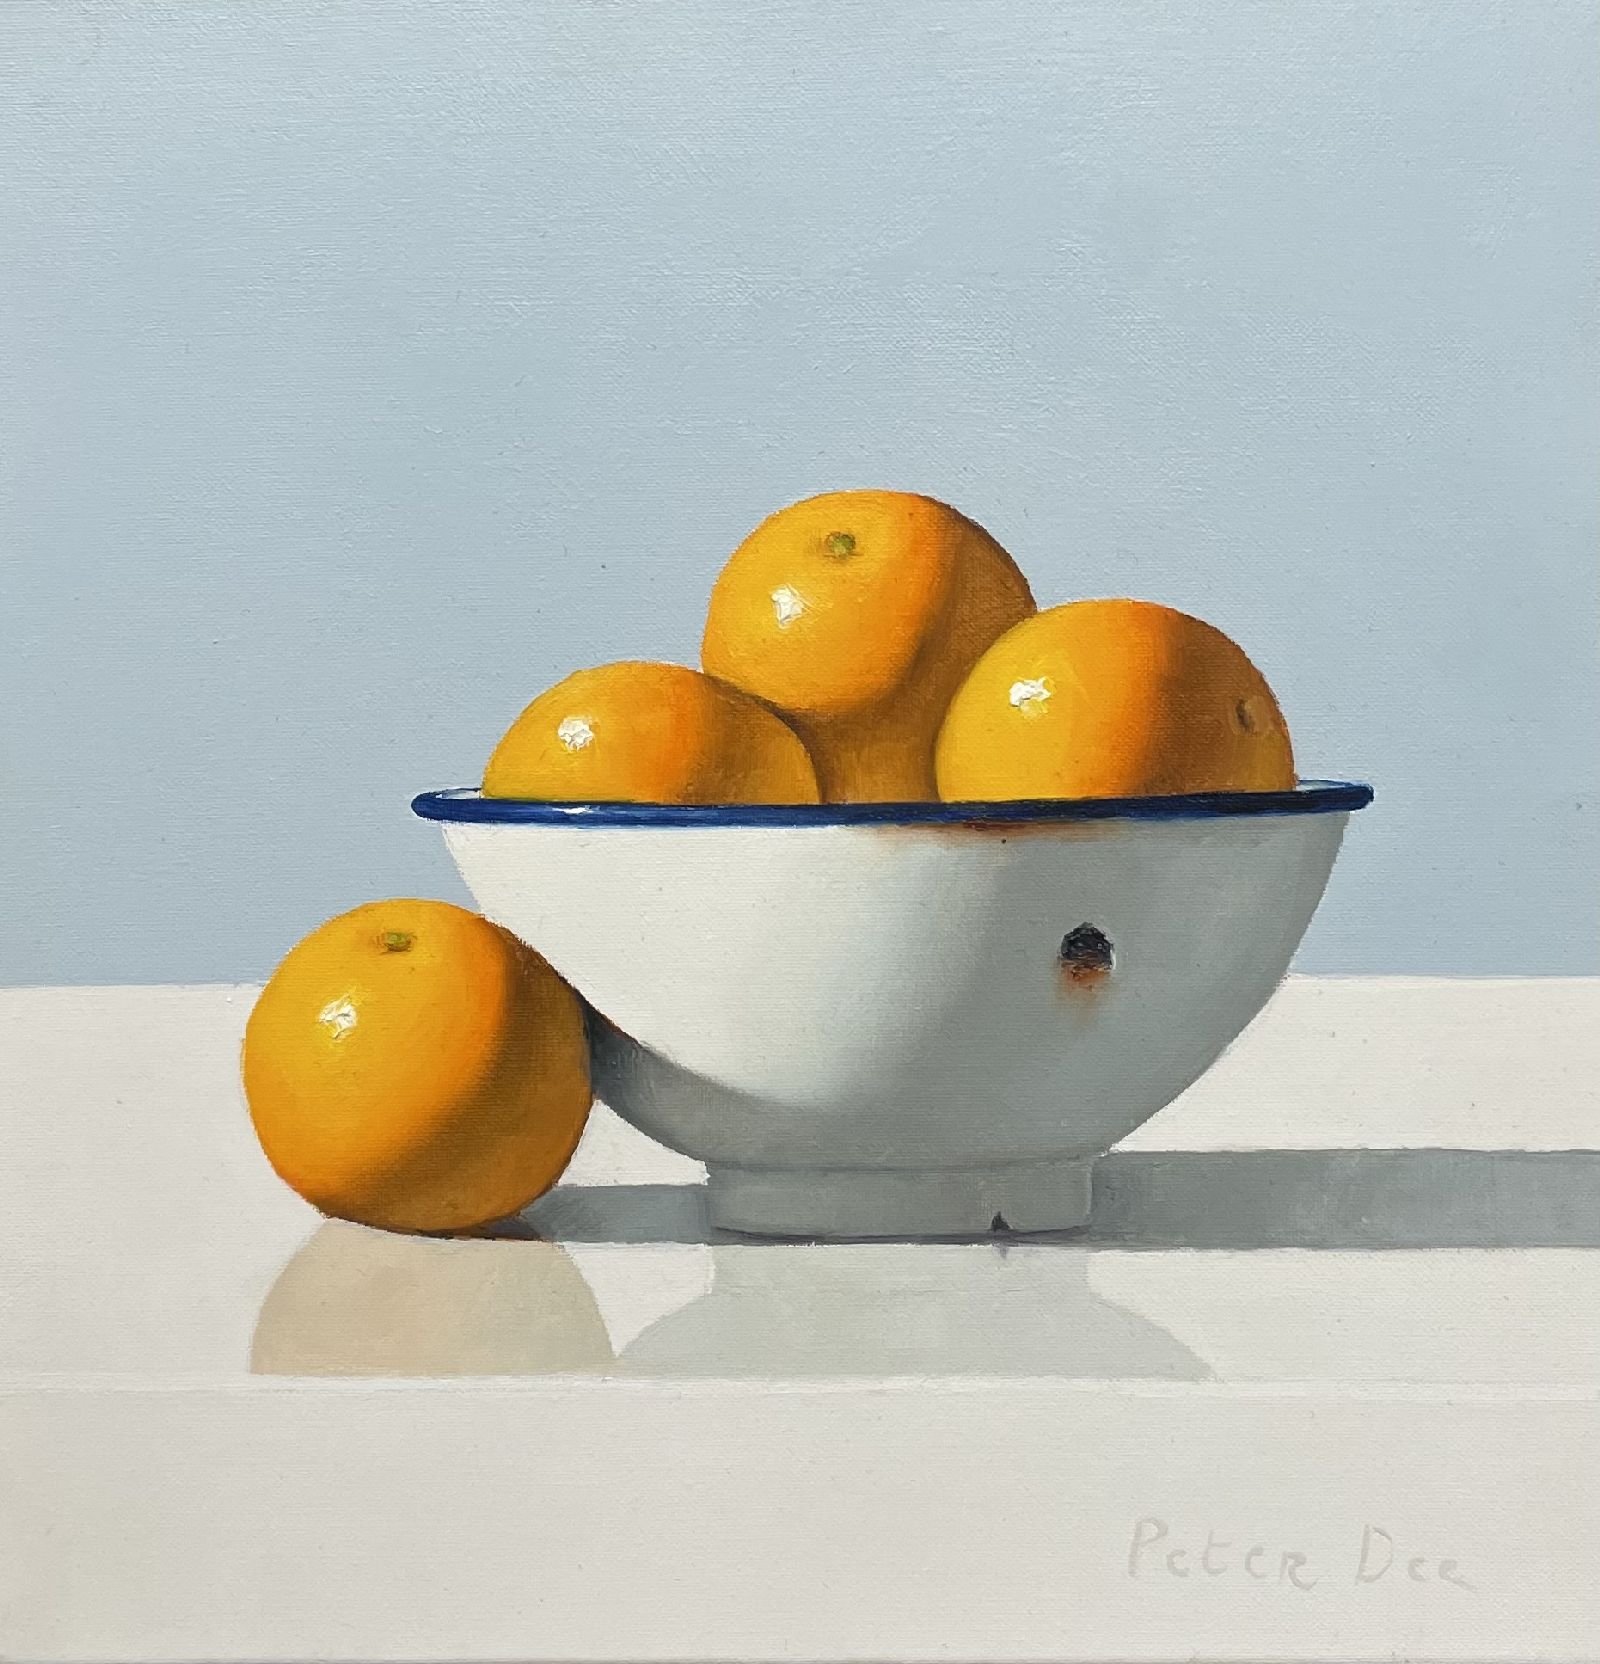 Peter Dee - Oranges in Vintage White Enamelware Bowl 